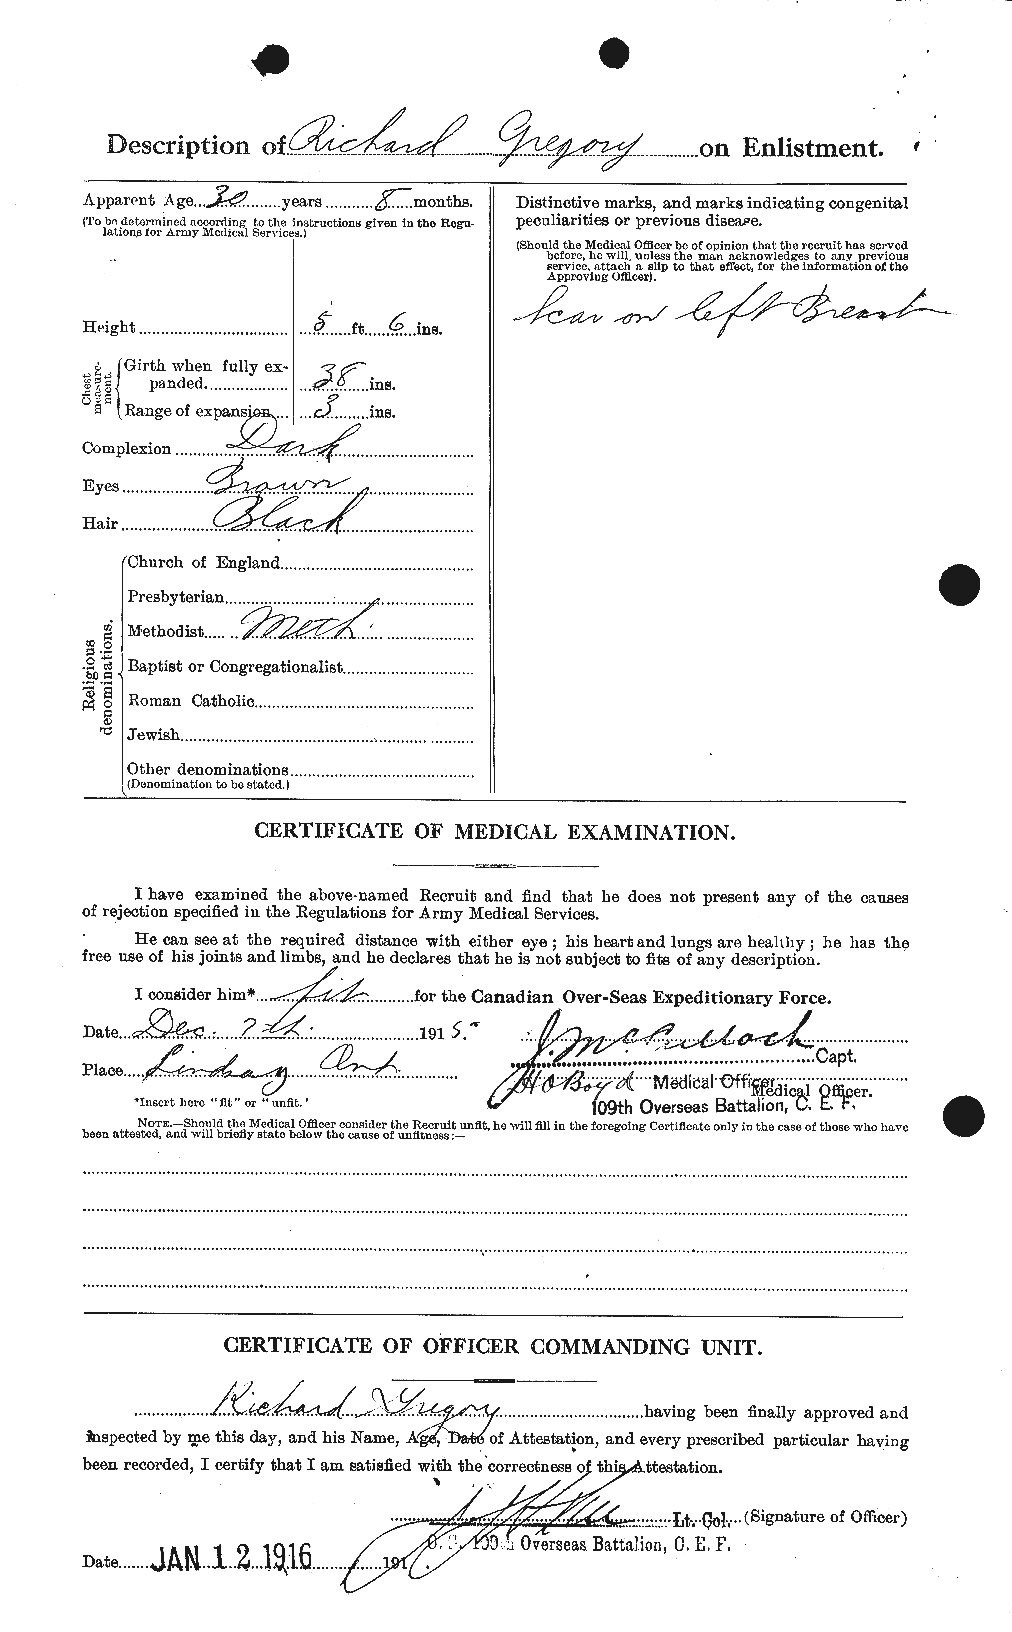 Dossiers du Personnel de la Première Guerre mondiale - CEC 363019b